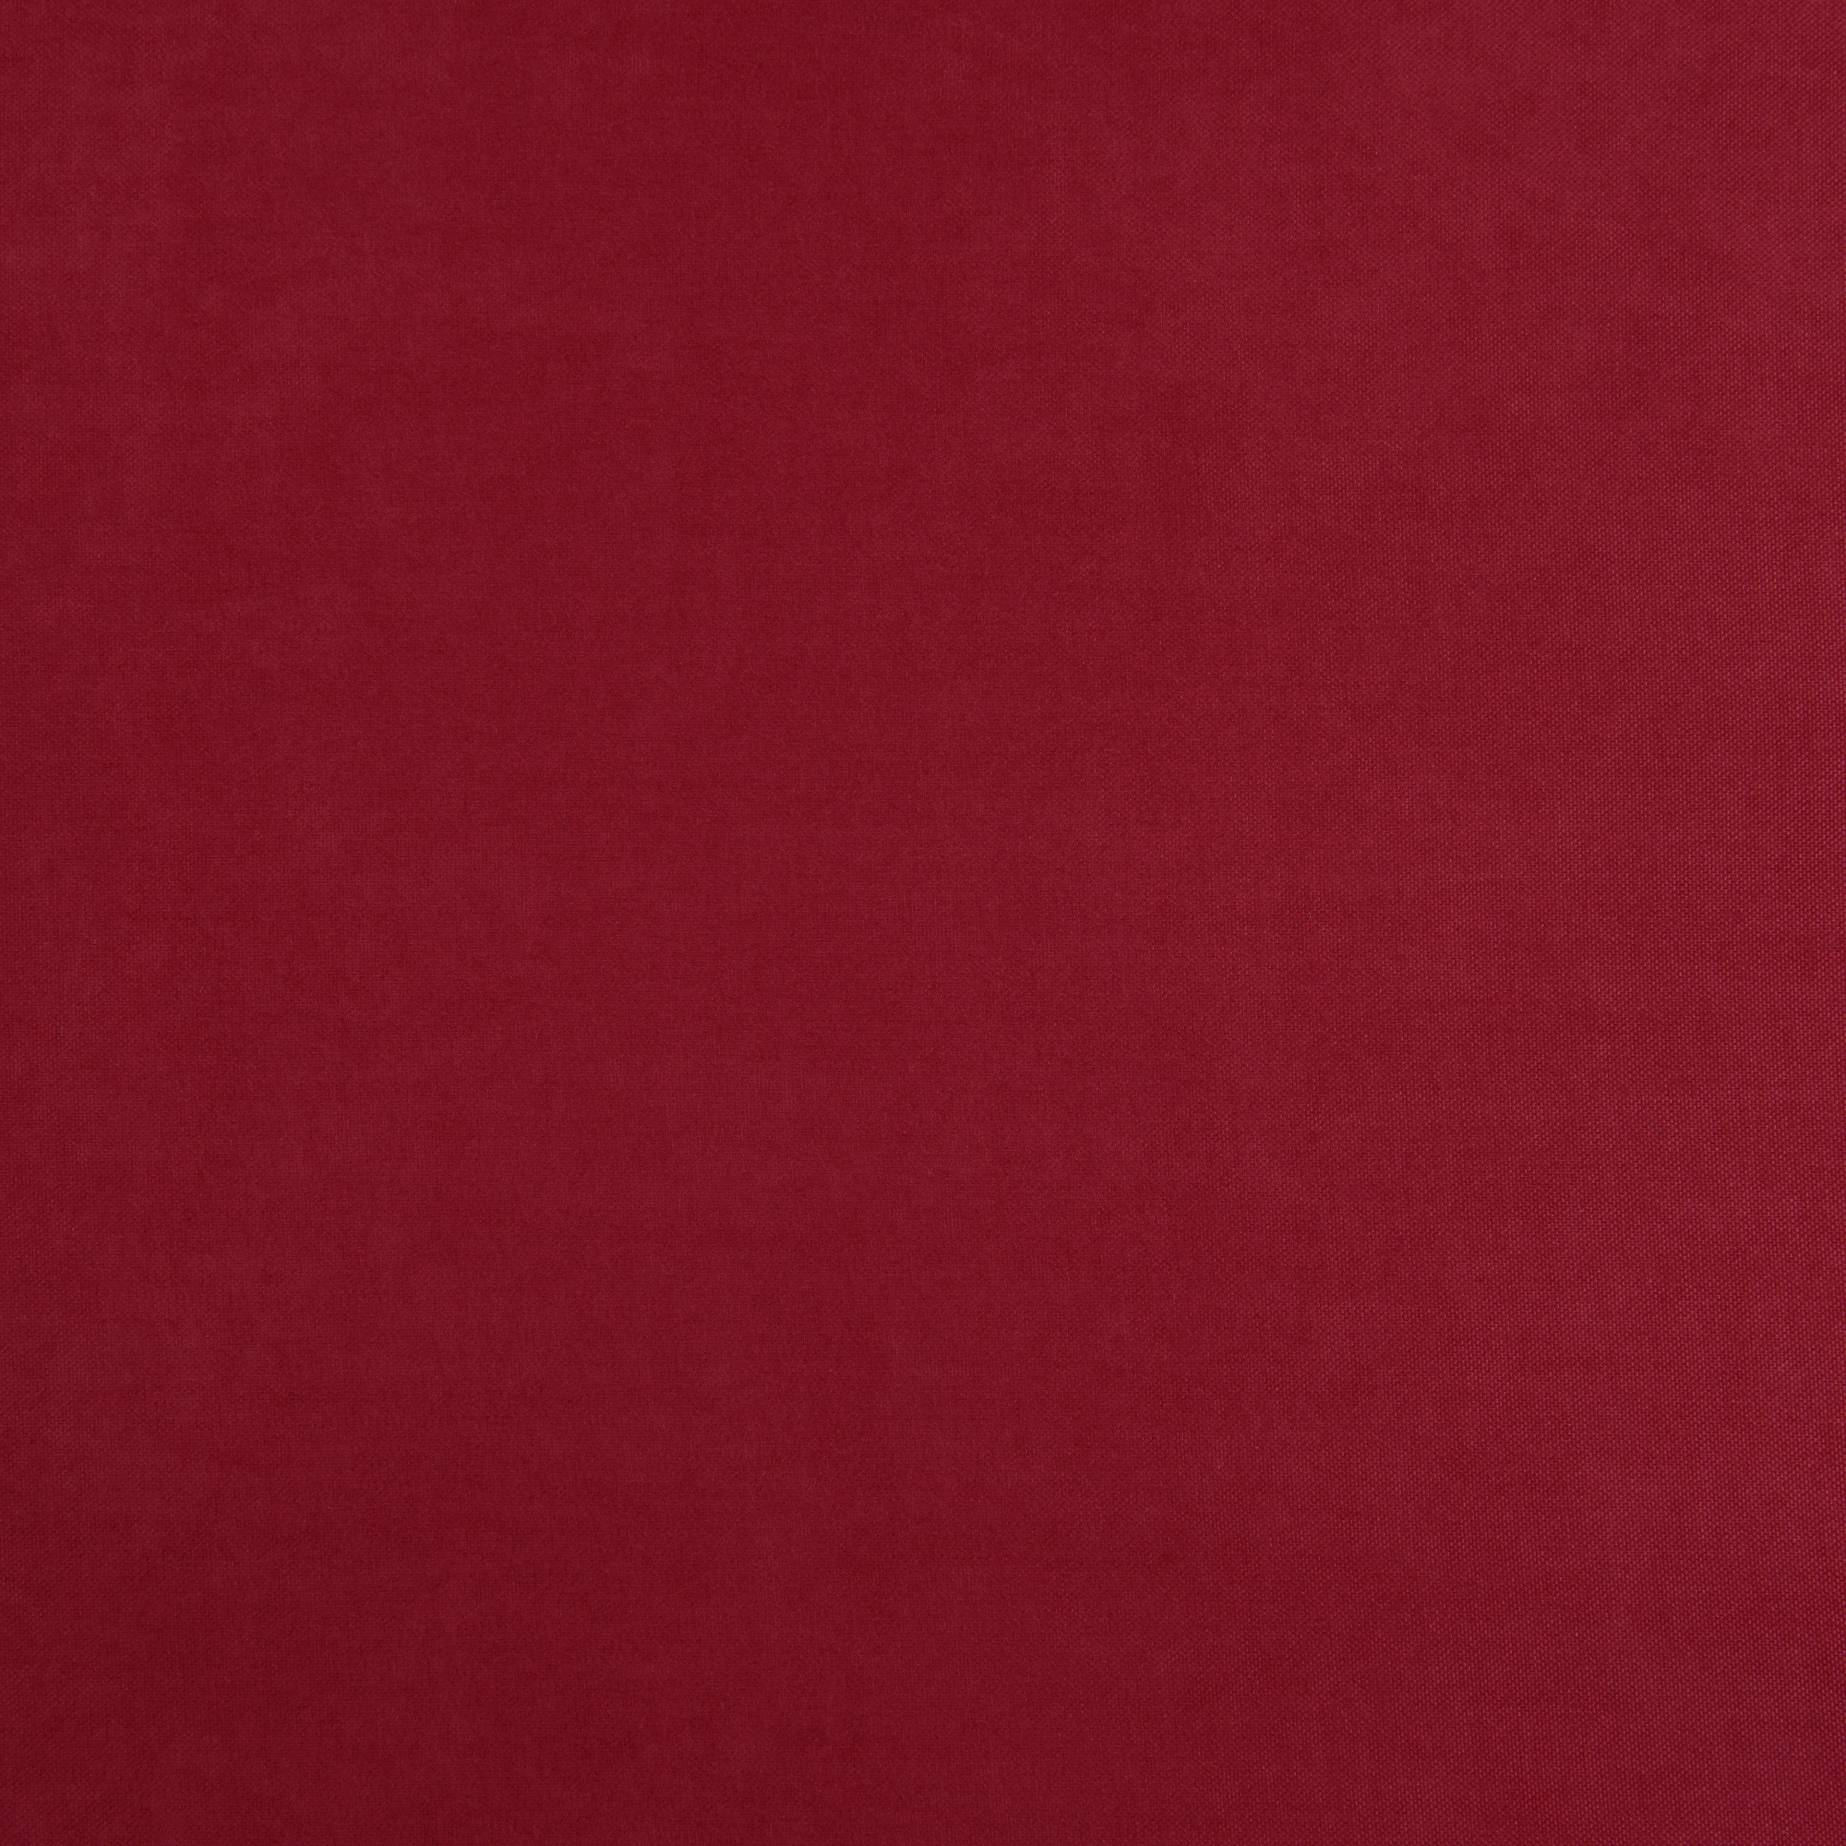 Декоративный нубук, Арвин 2, Канвас Даймонд, красный, полиэстер 100%, 193 г/м2, 50х35 см